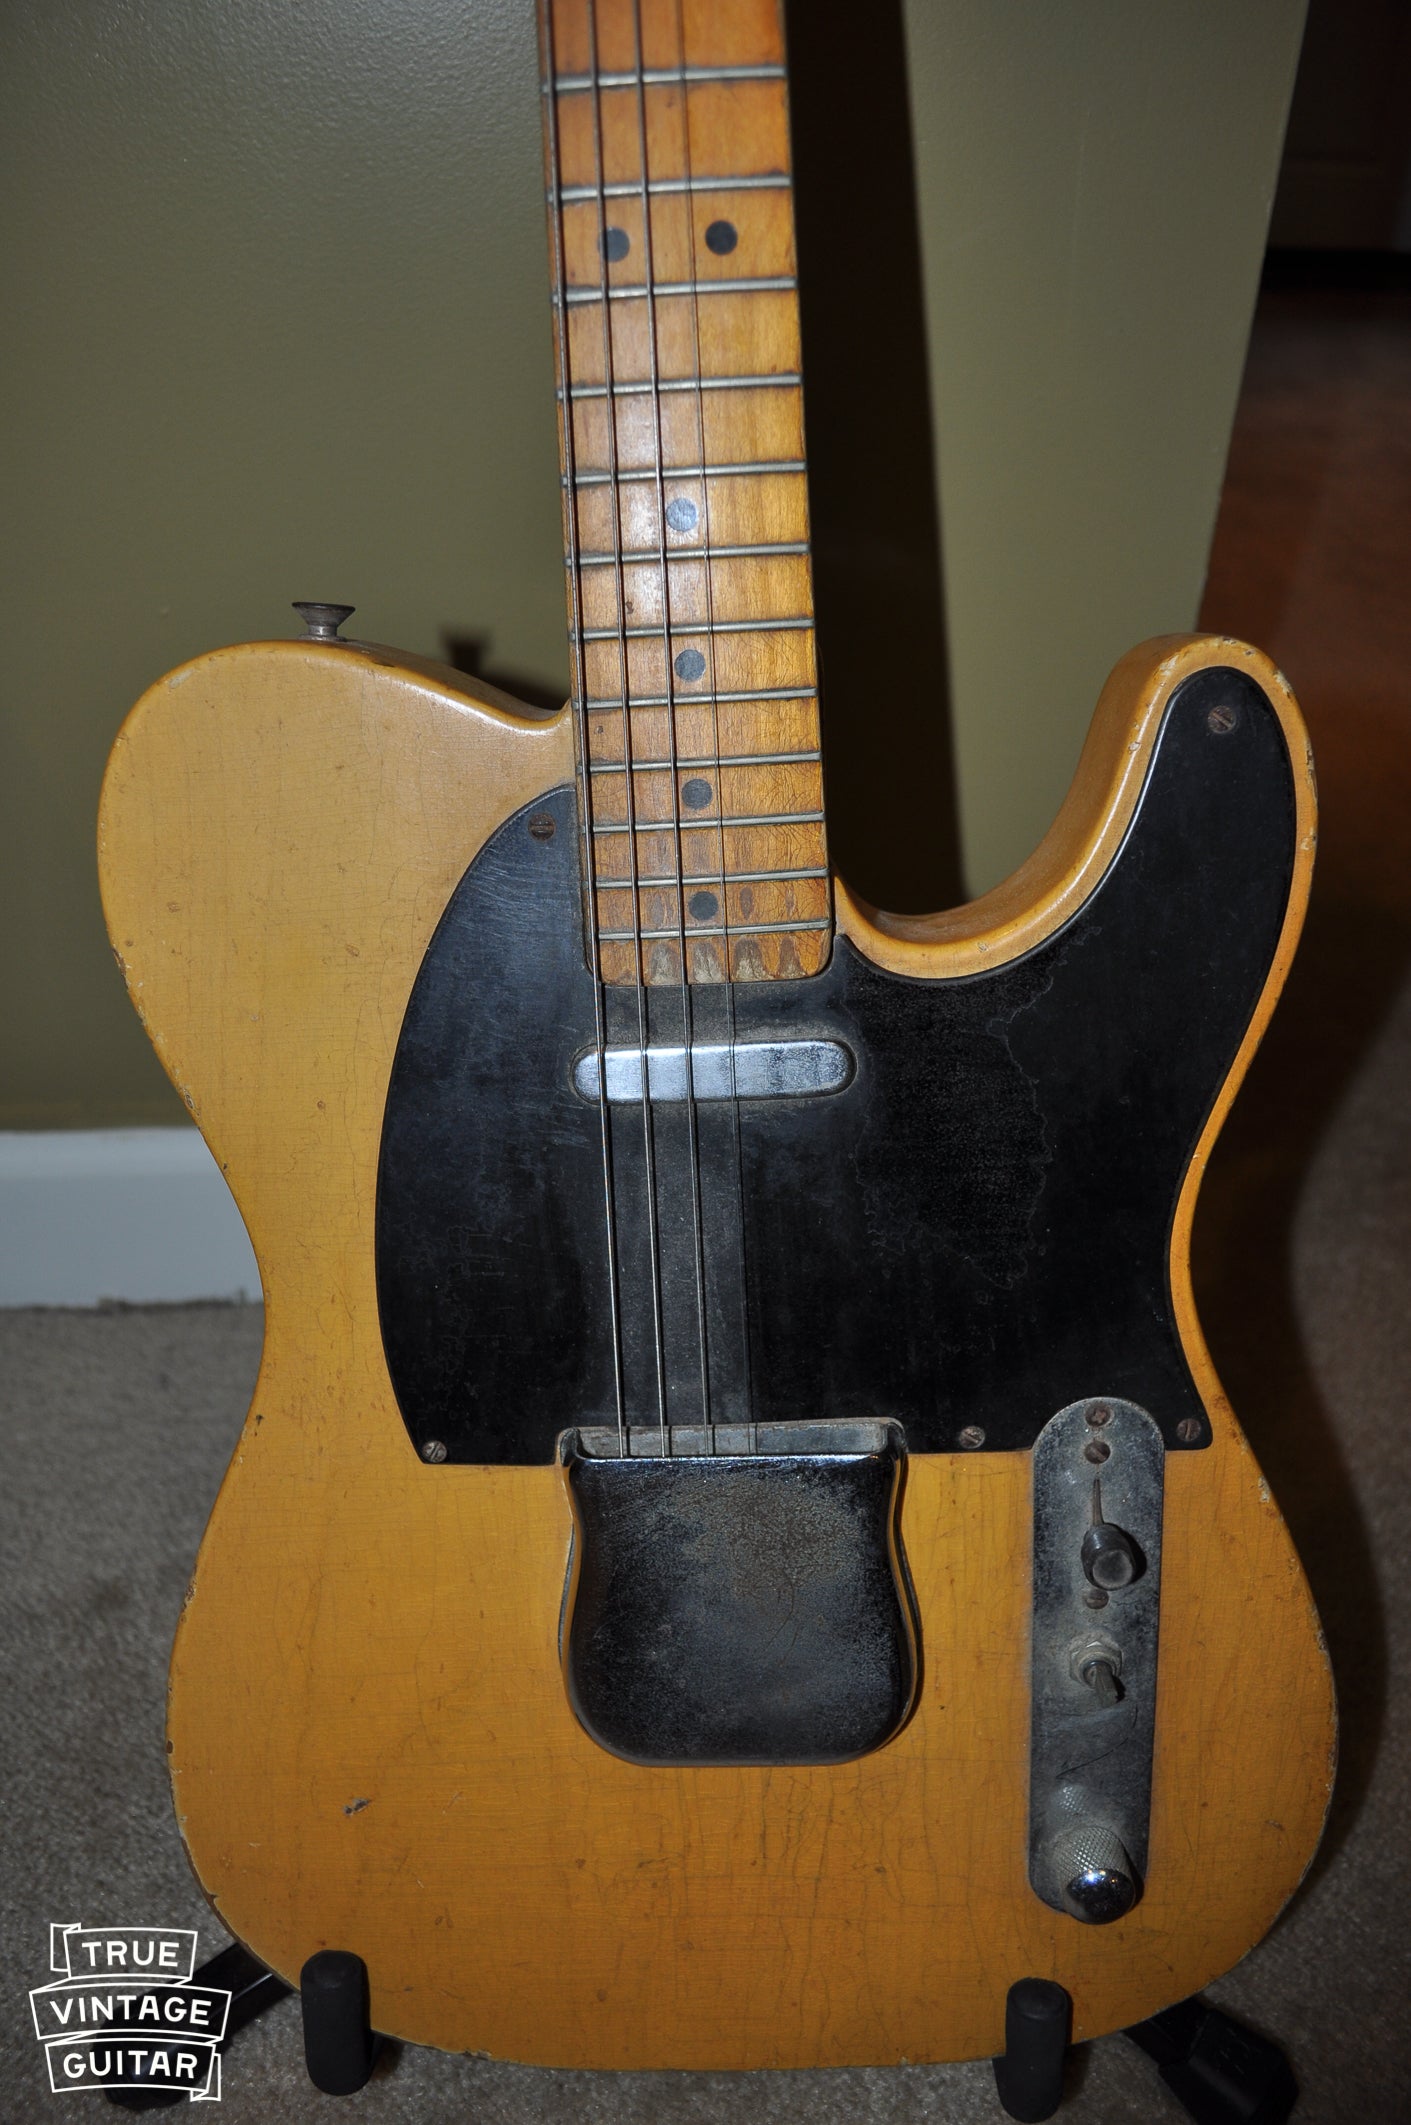 Fender Telecaster 1952 with black pickguard